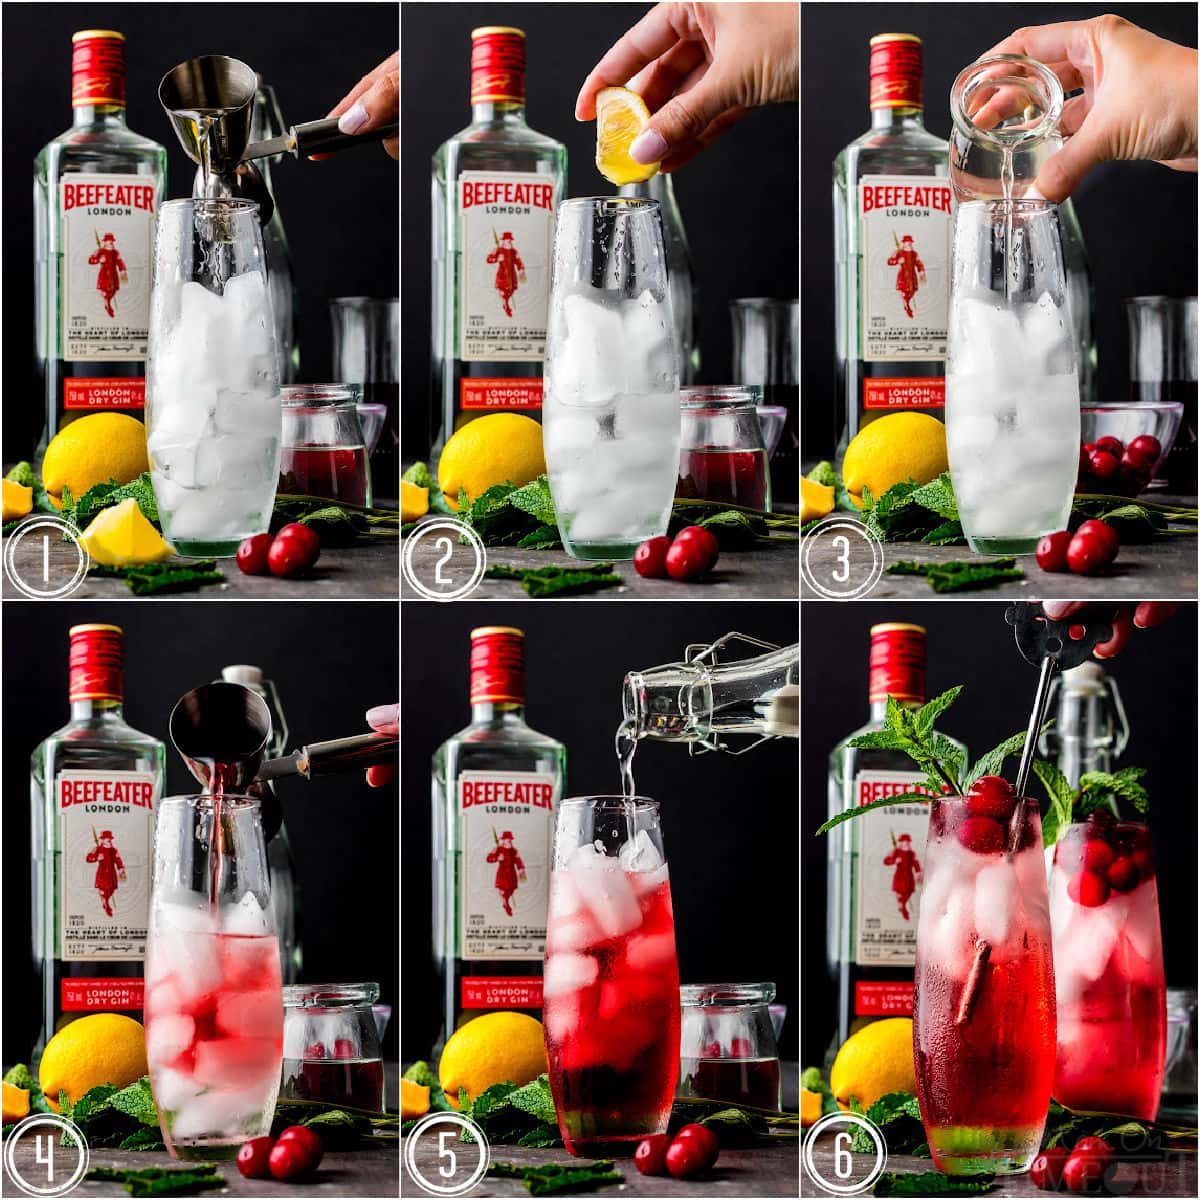 sei collage di immagini che mostrano come preparare un cocktail di gin al mirtillo passo dopo passo.